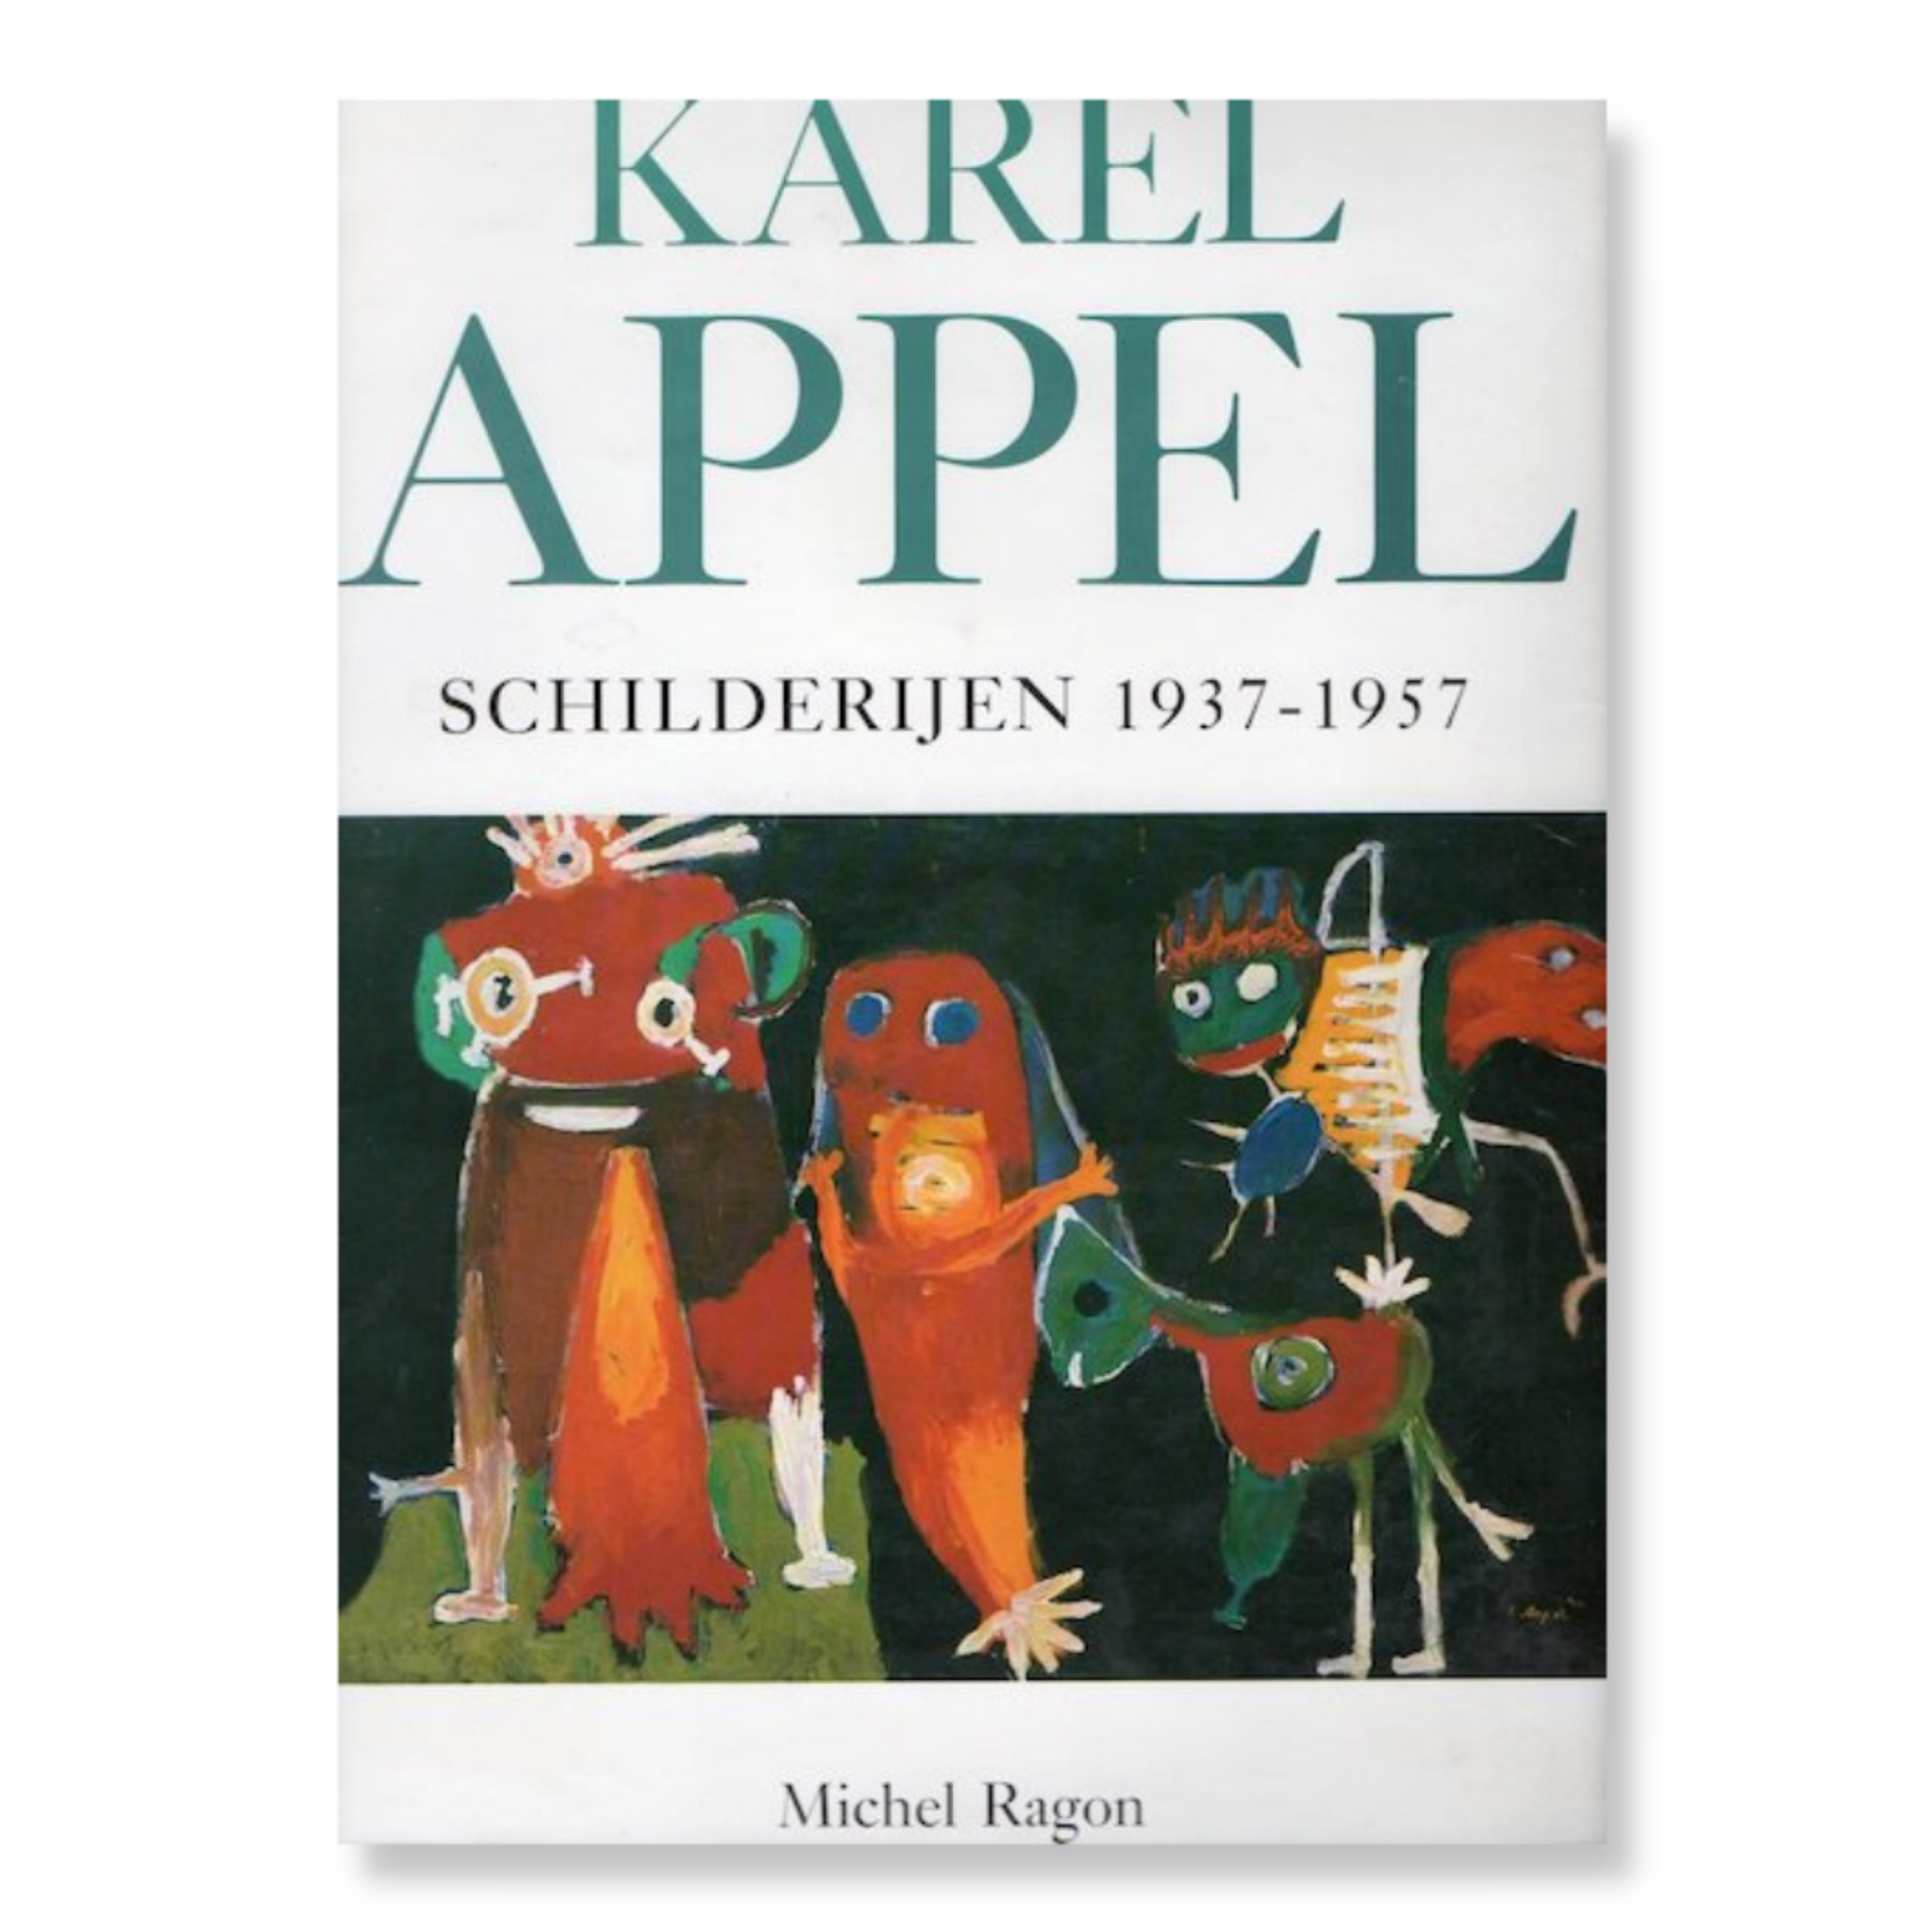 Karel Appel - Schilderijen 1937 - 1957